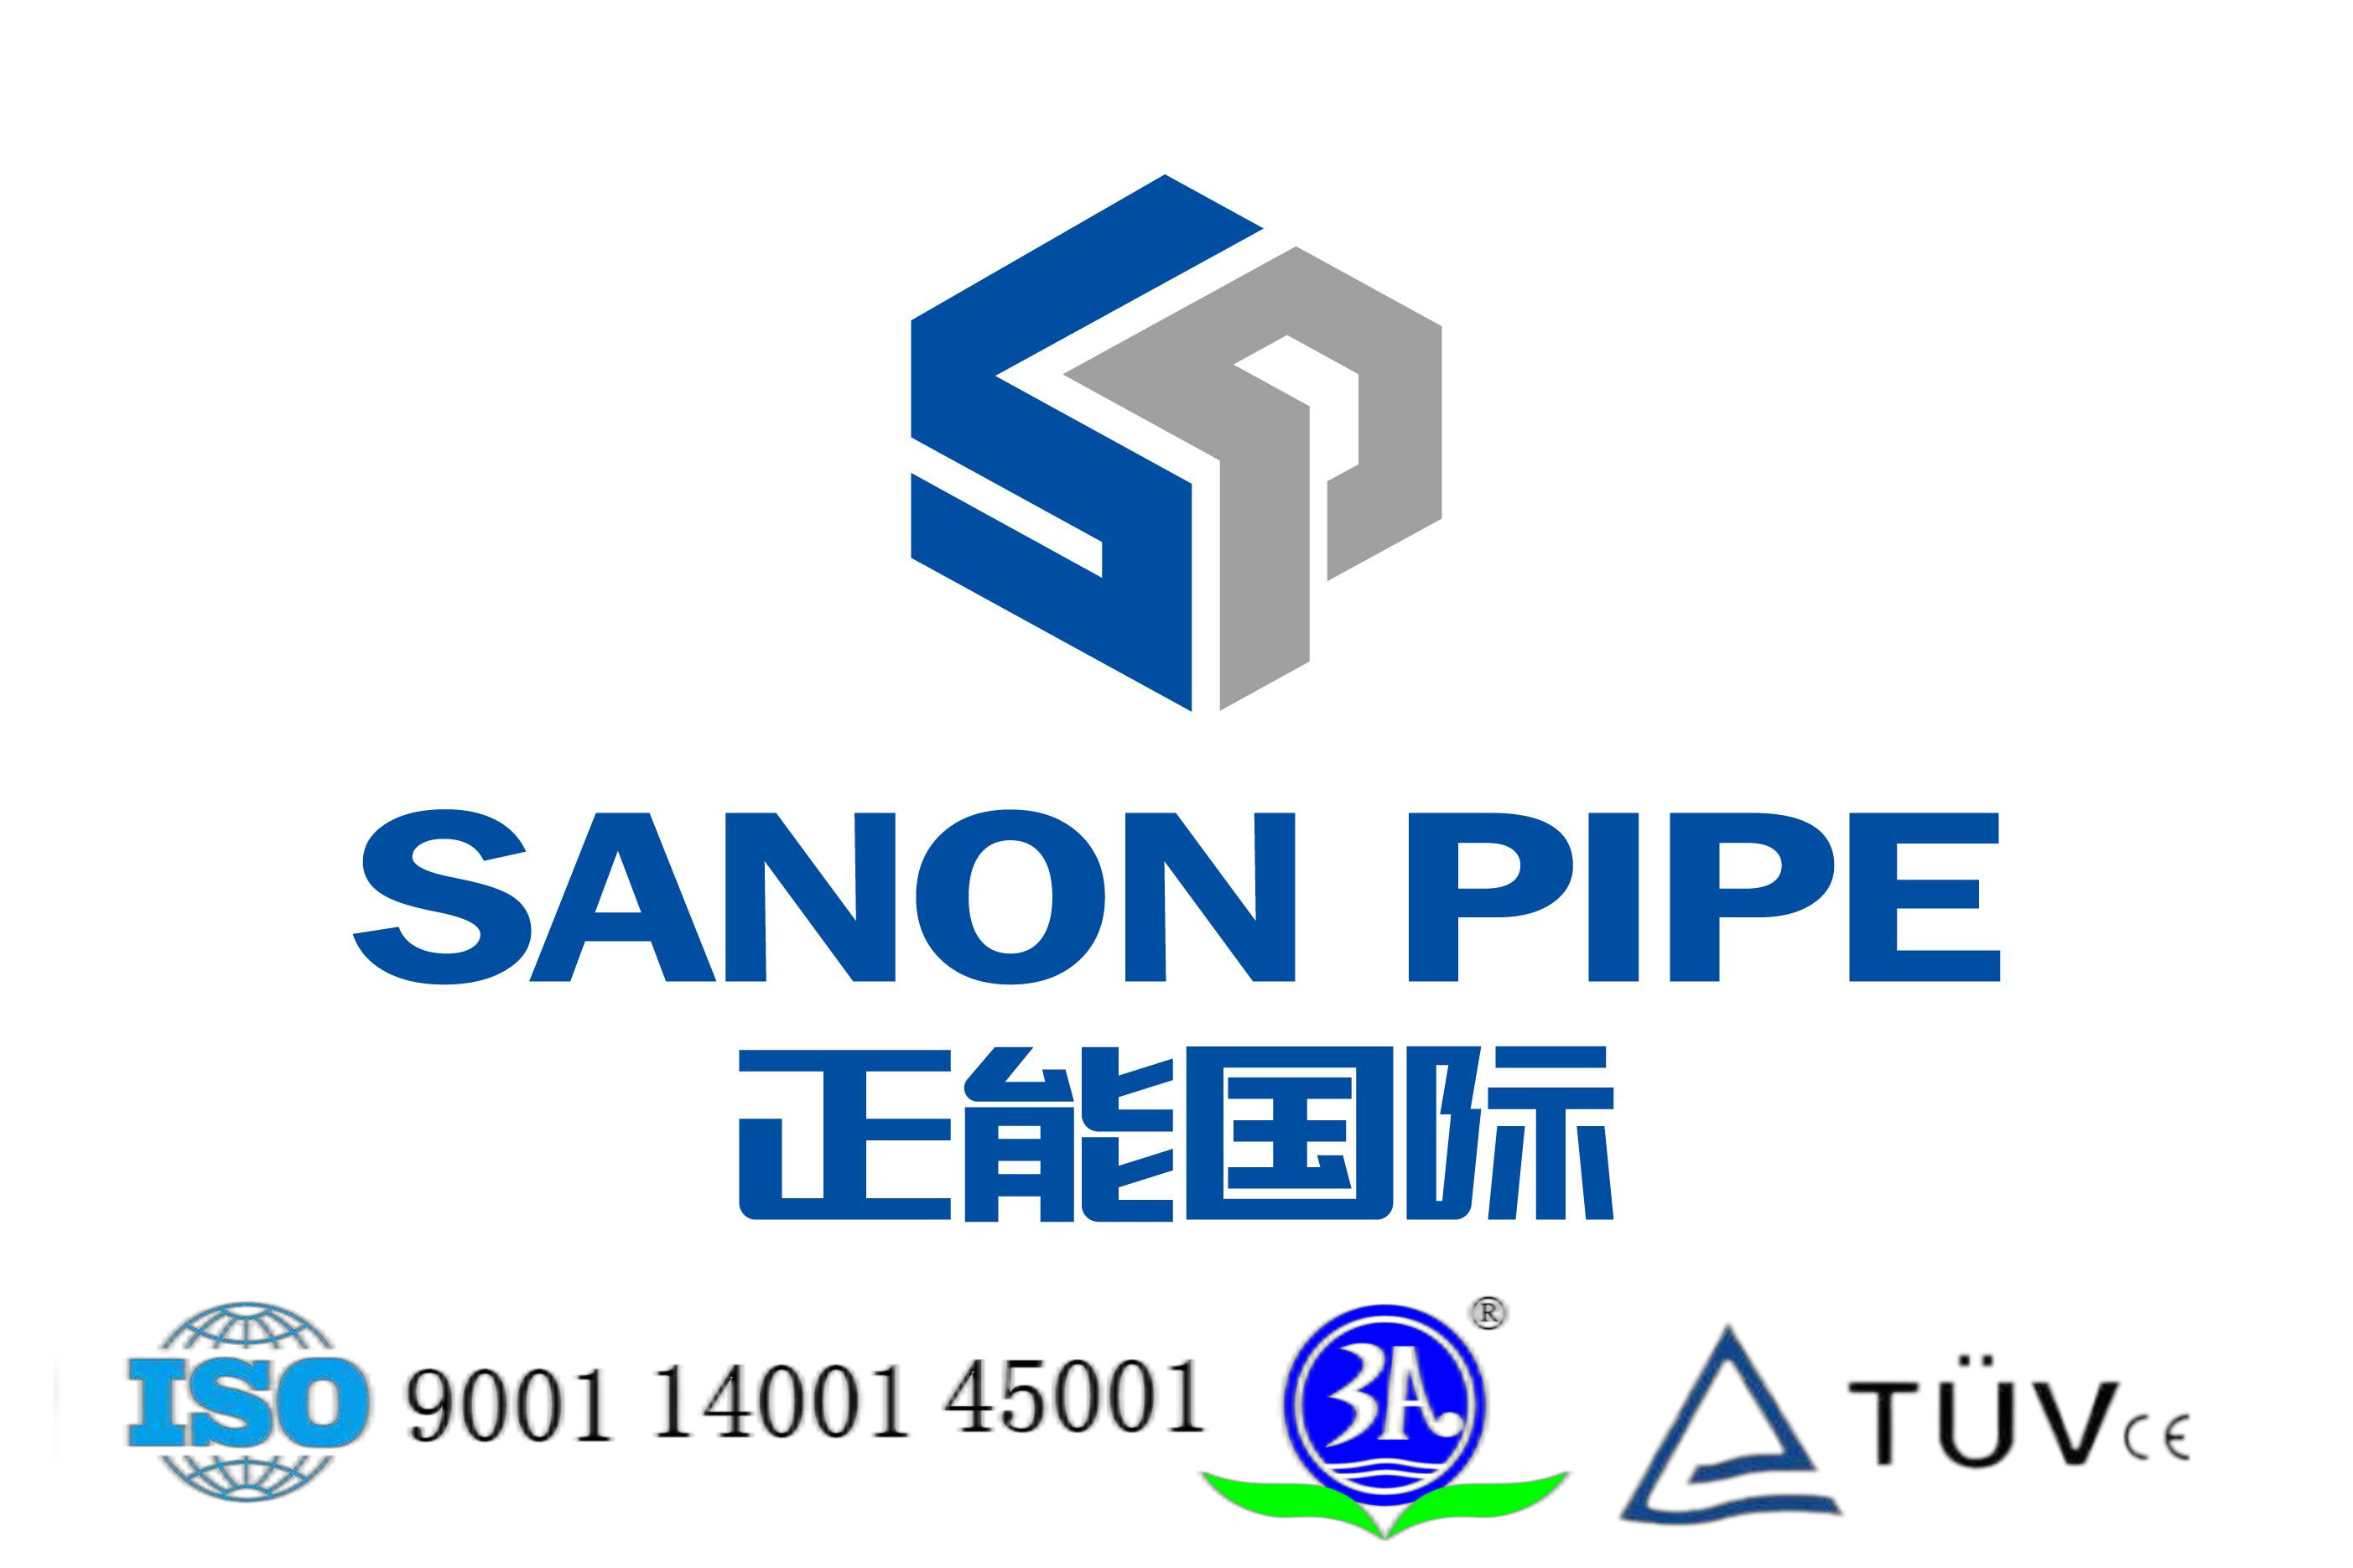 λογότυπο sanonpipe